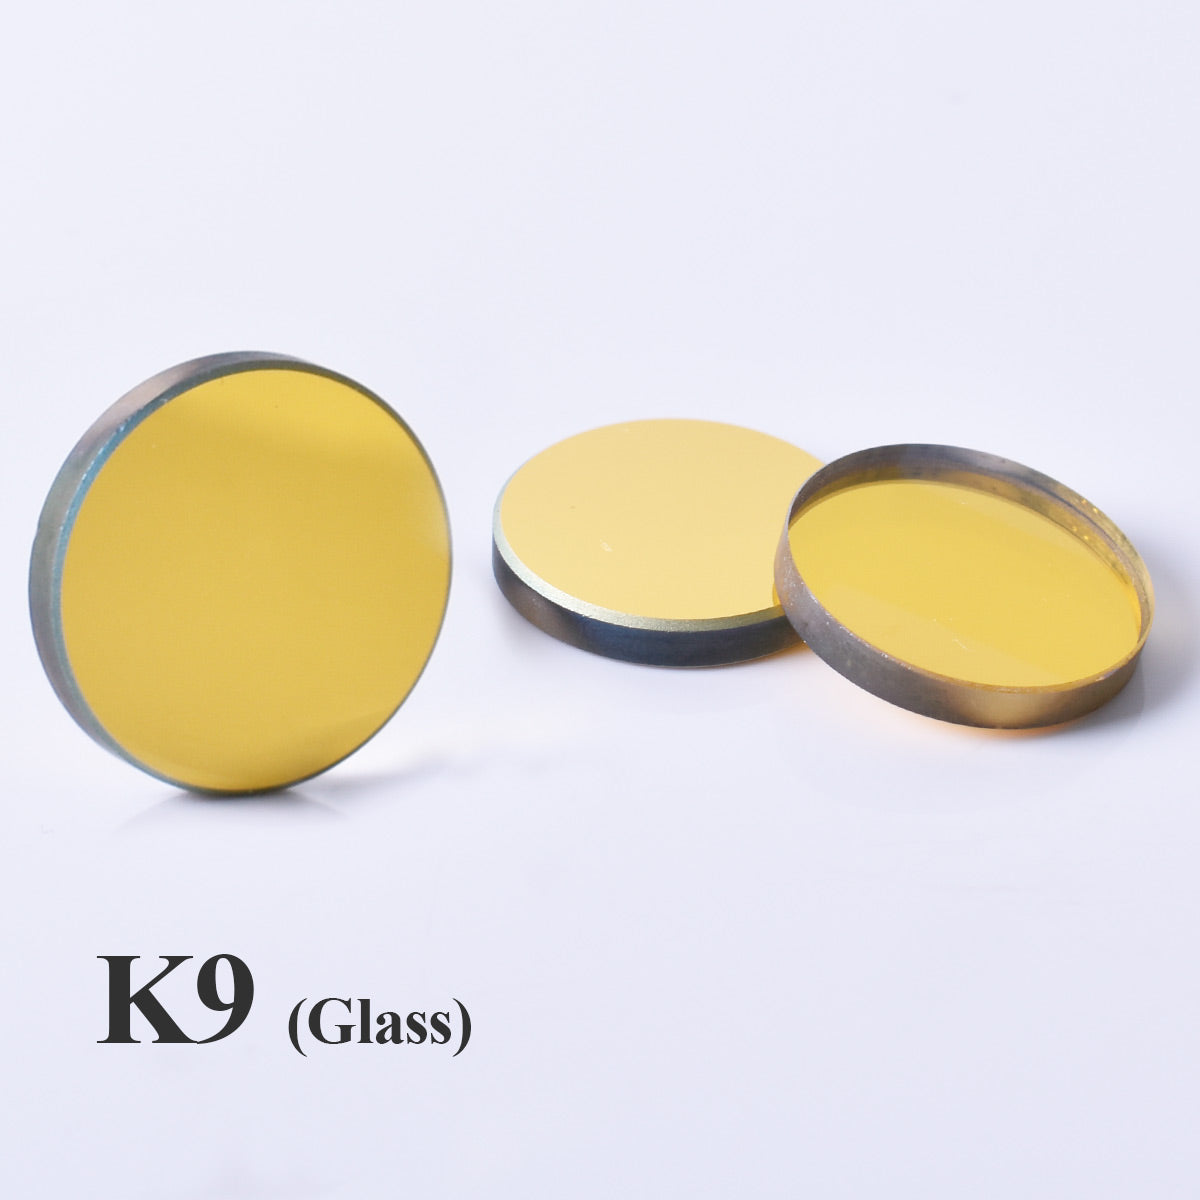 Startnow 3 шт./лот 20 мм K9 стекло CO2 лазерные отражающие зеркала с позолоченной отражающей линзой